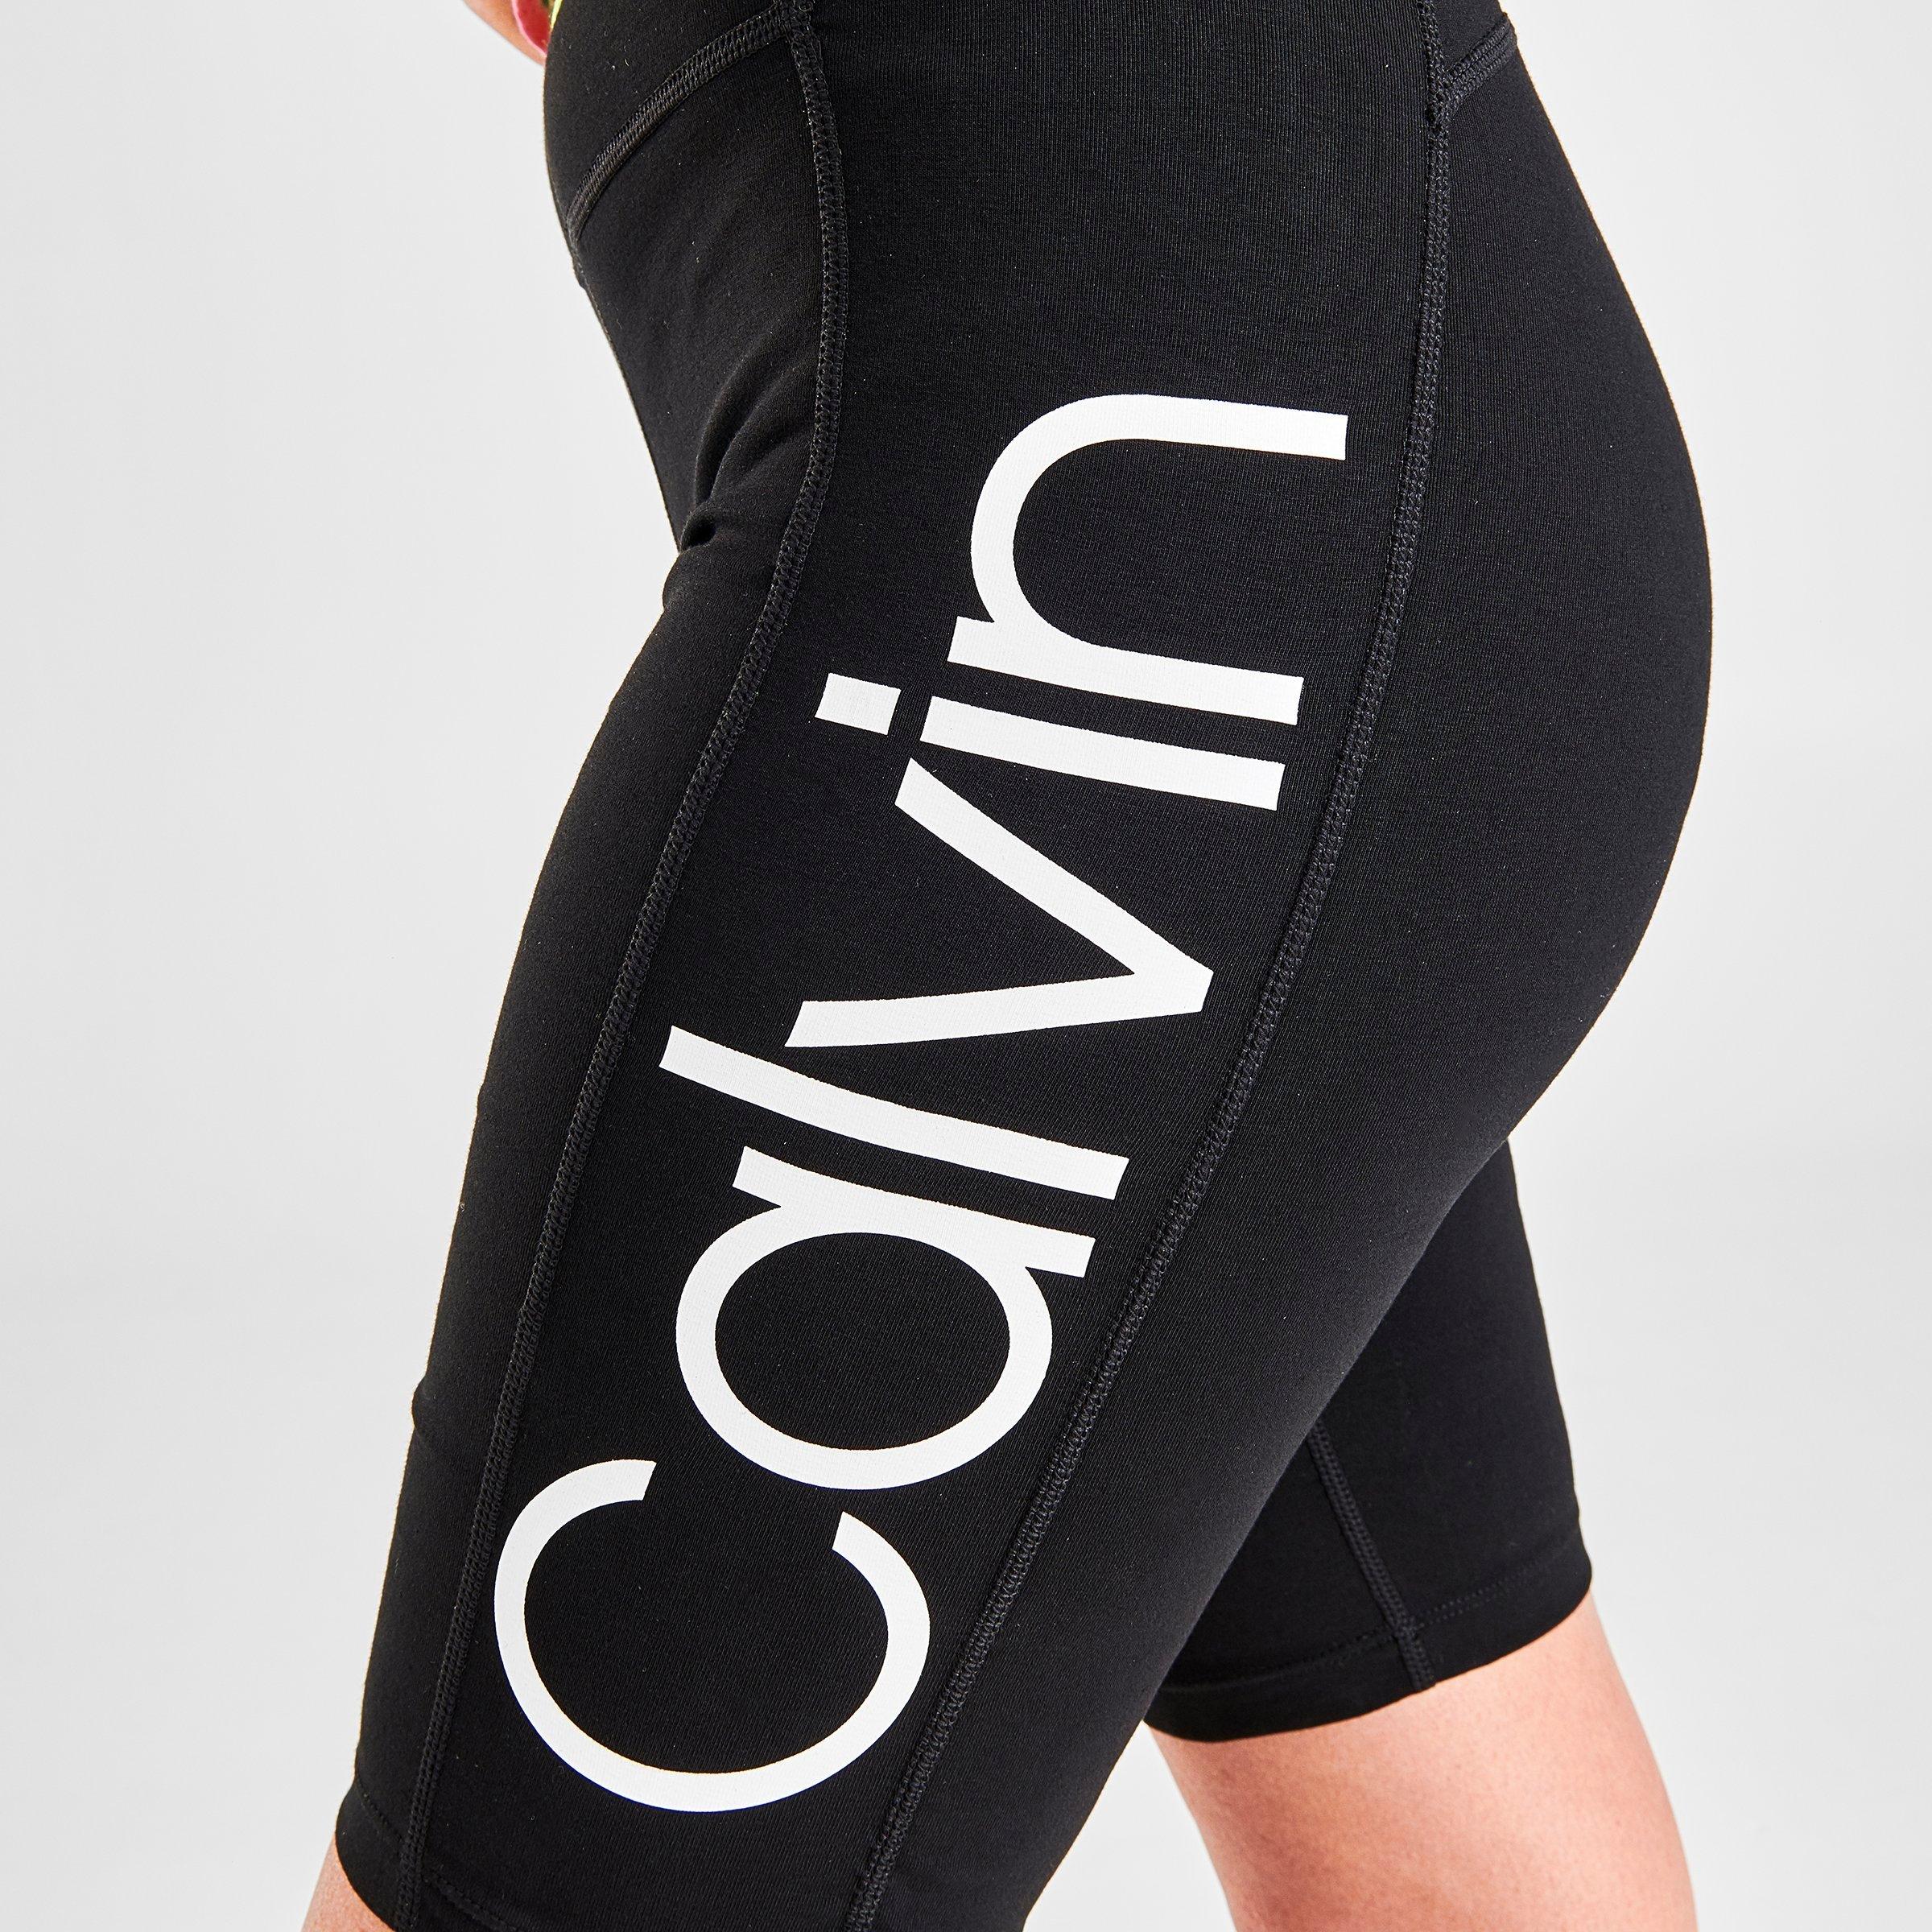 calvin klein cycle shorts